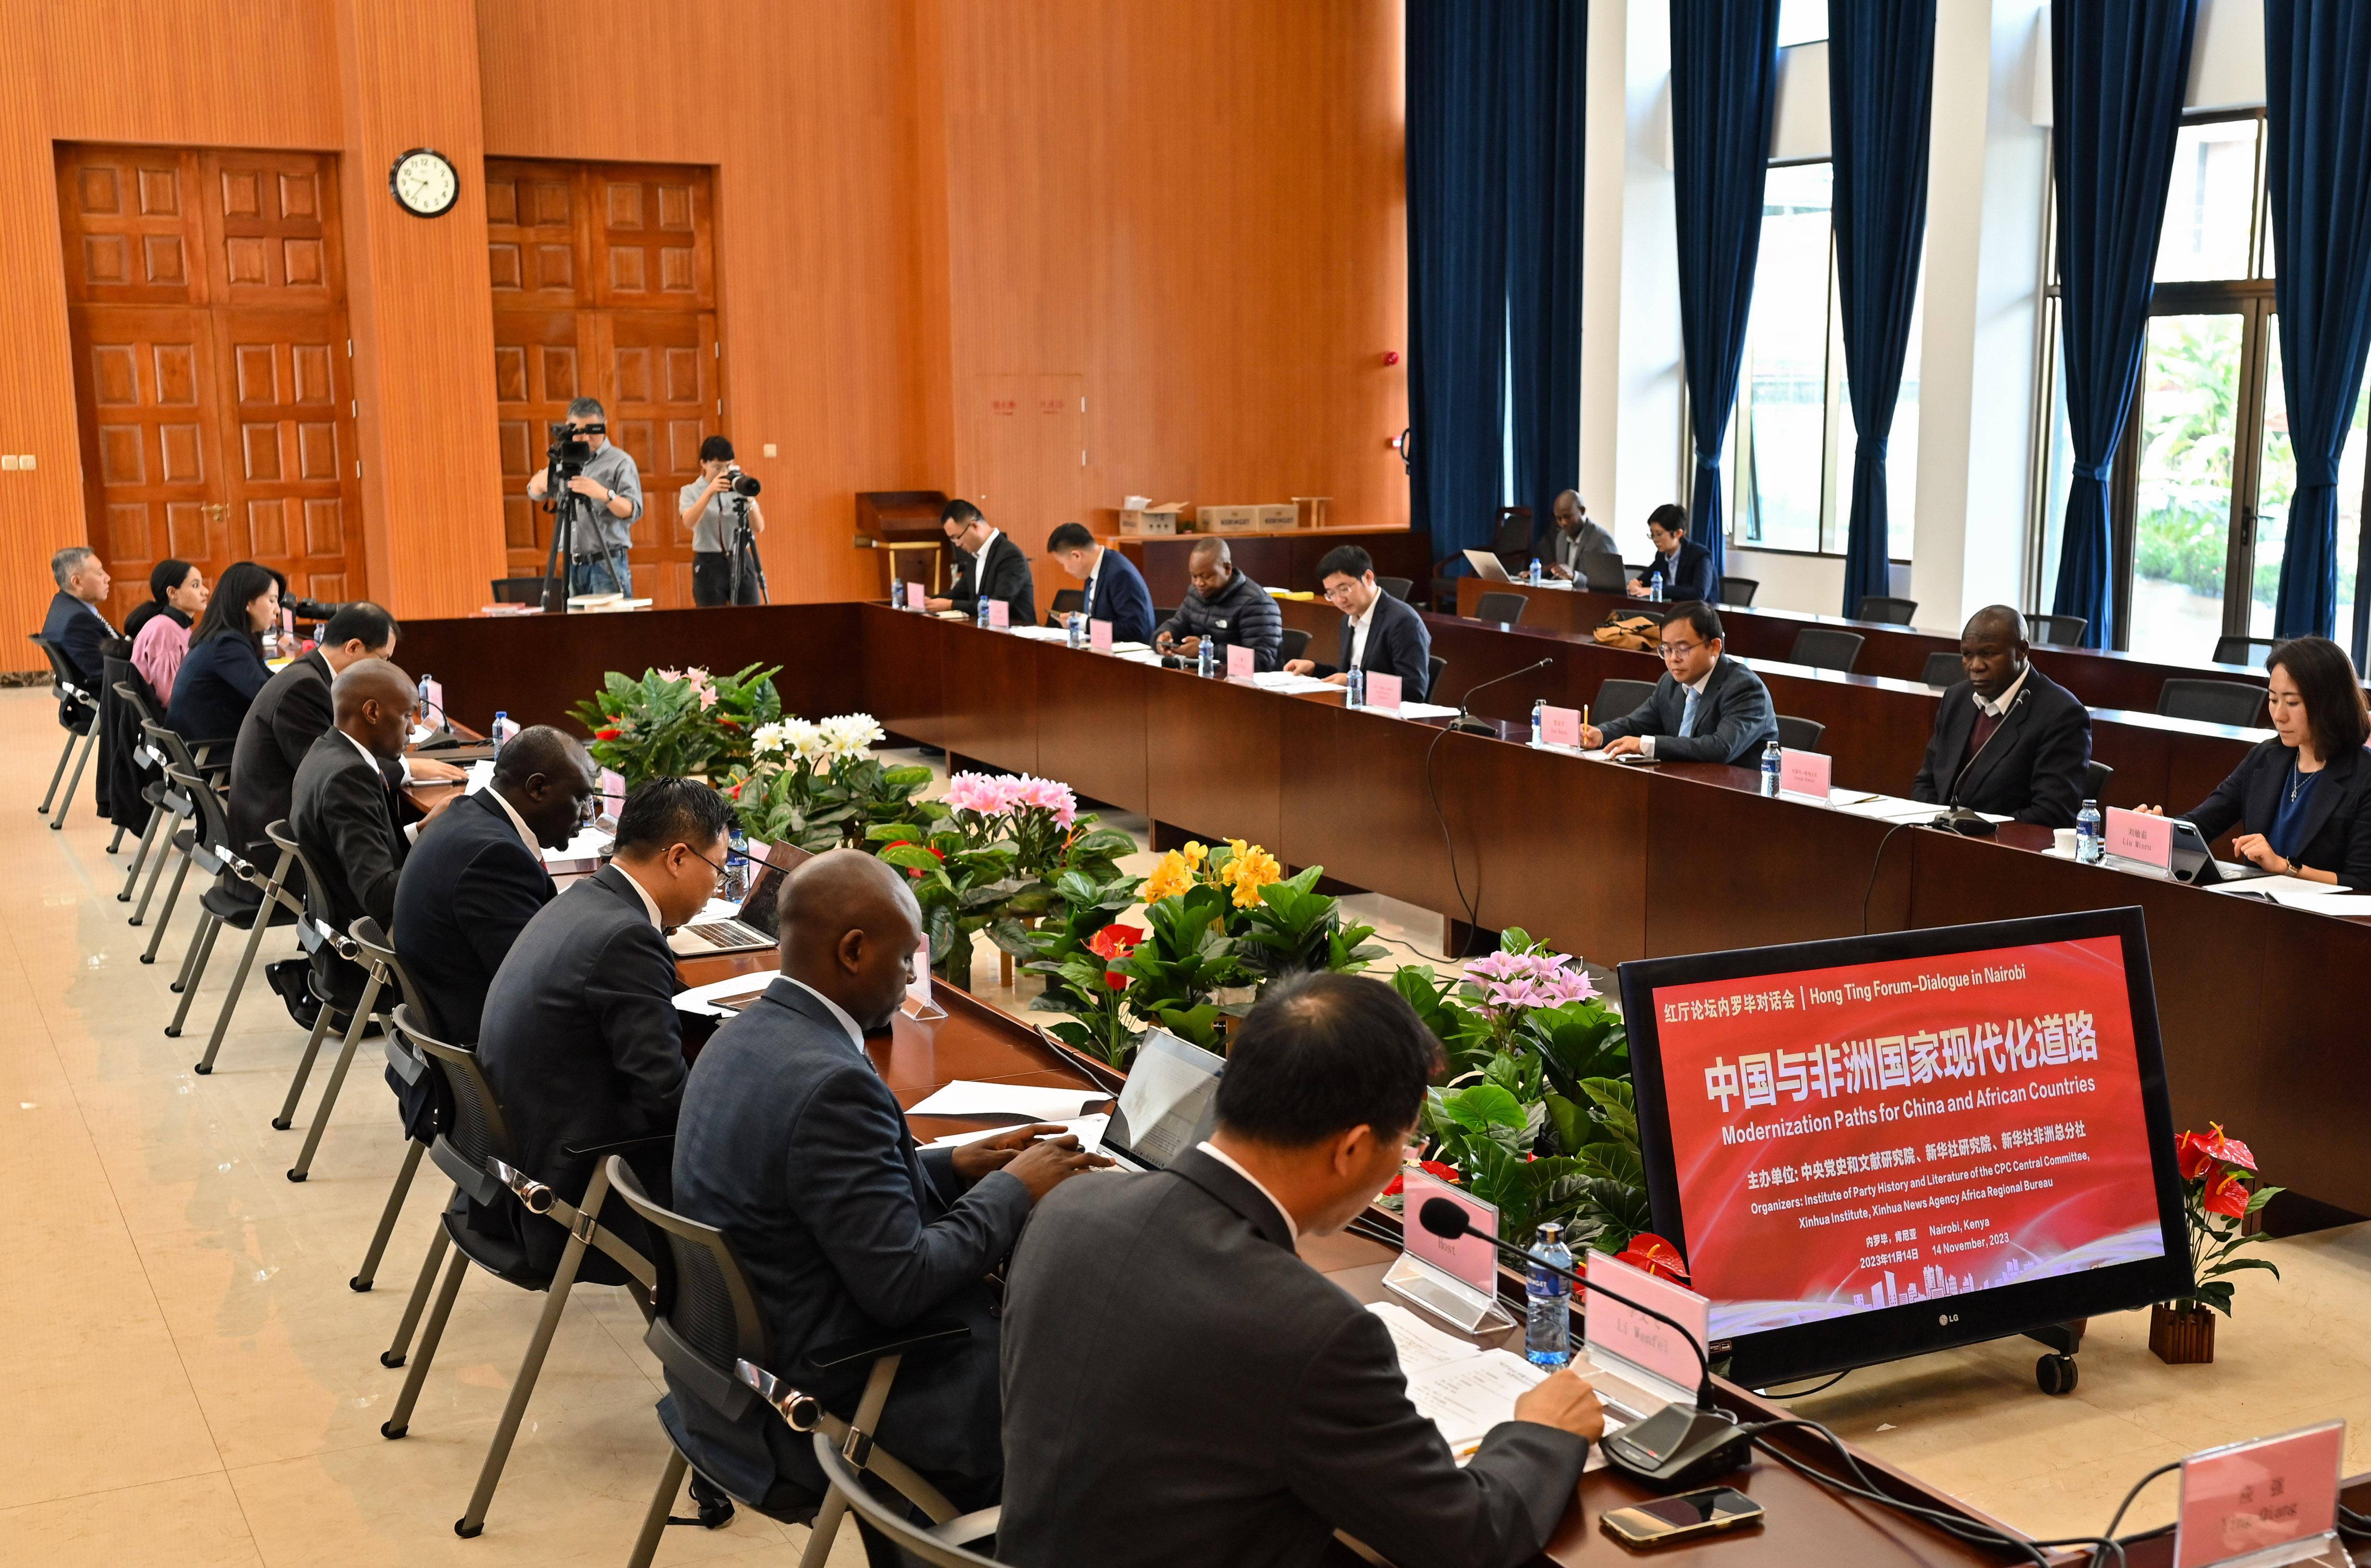 （国际·图文互动）“红厅论坛：中国与非洲国家现代化道路”内罗毕对话会成功举办